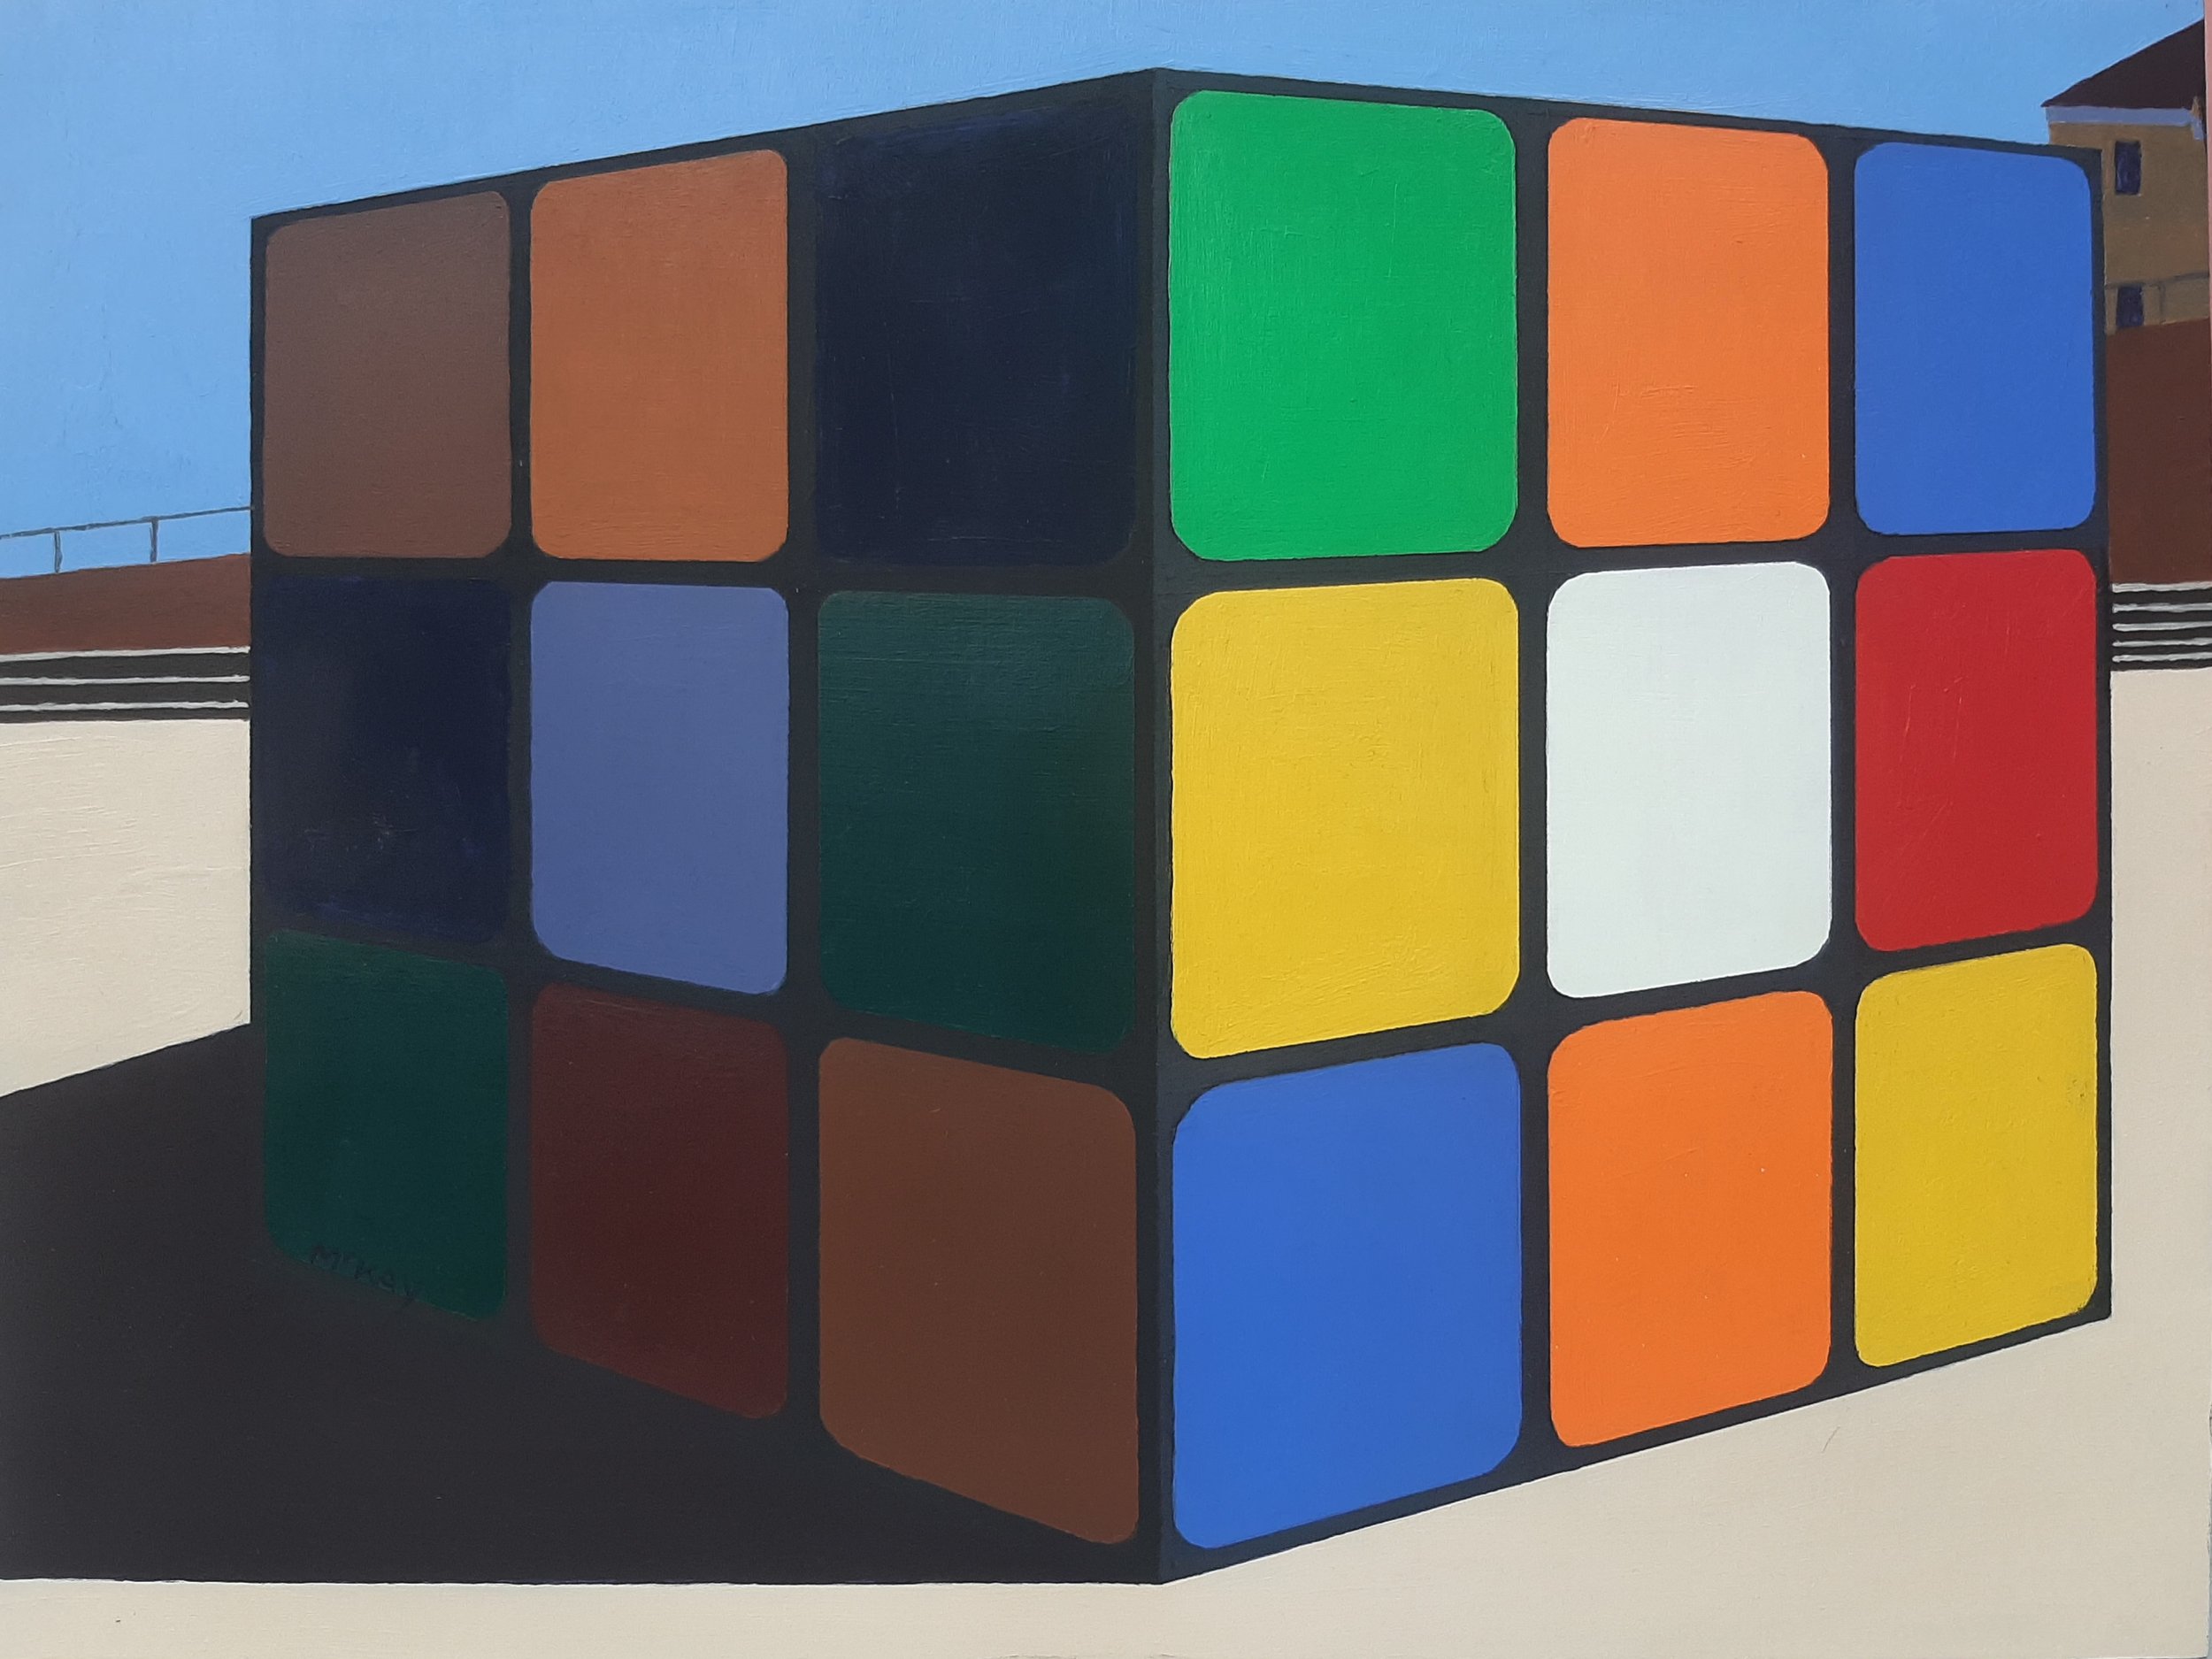 2021022_Maroubra(Cube1).jpg